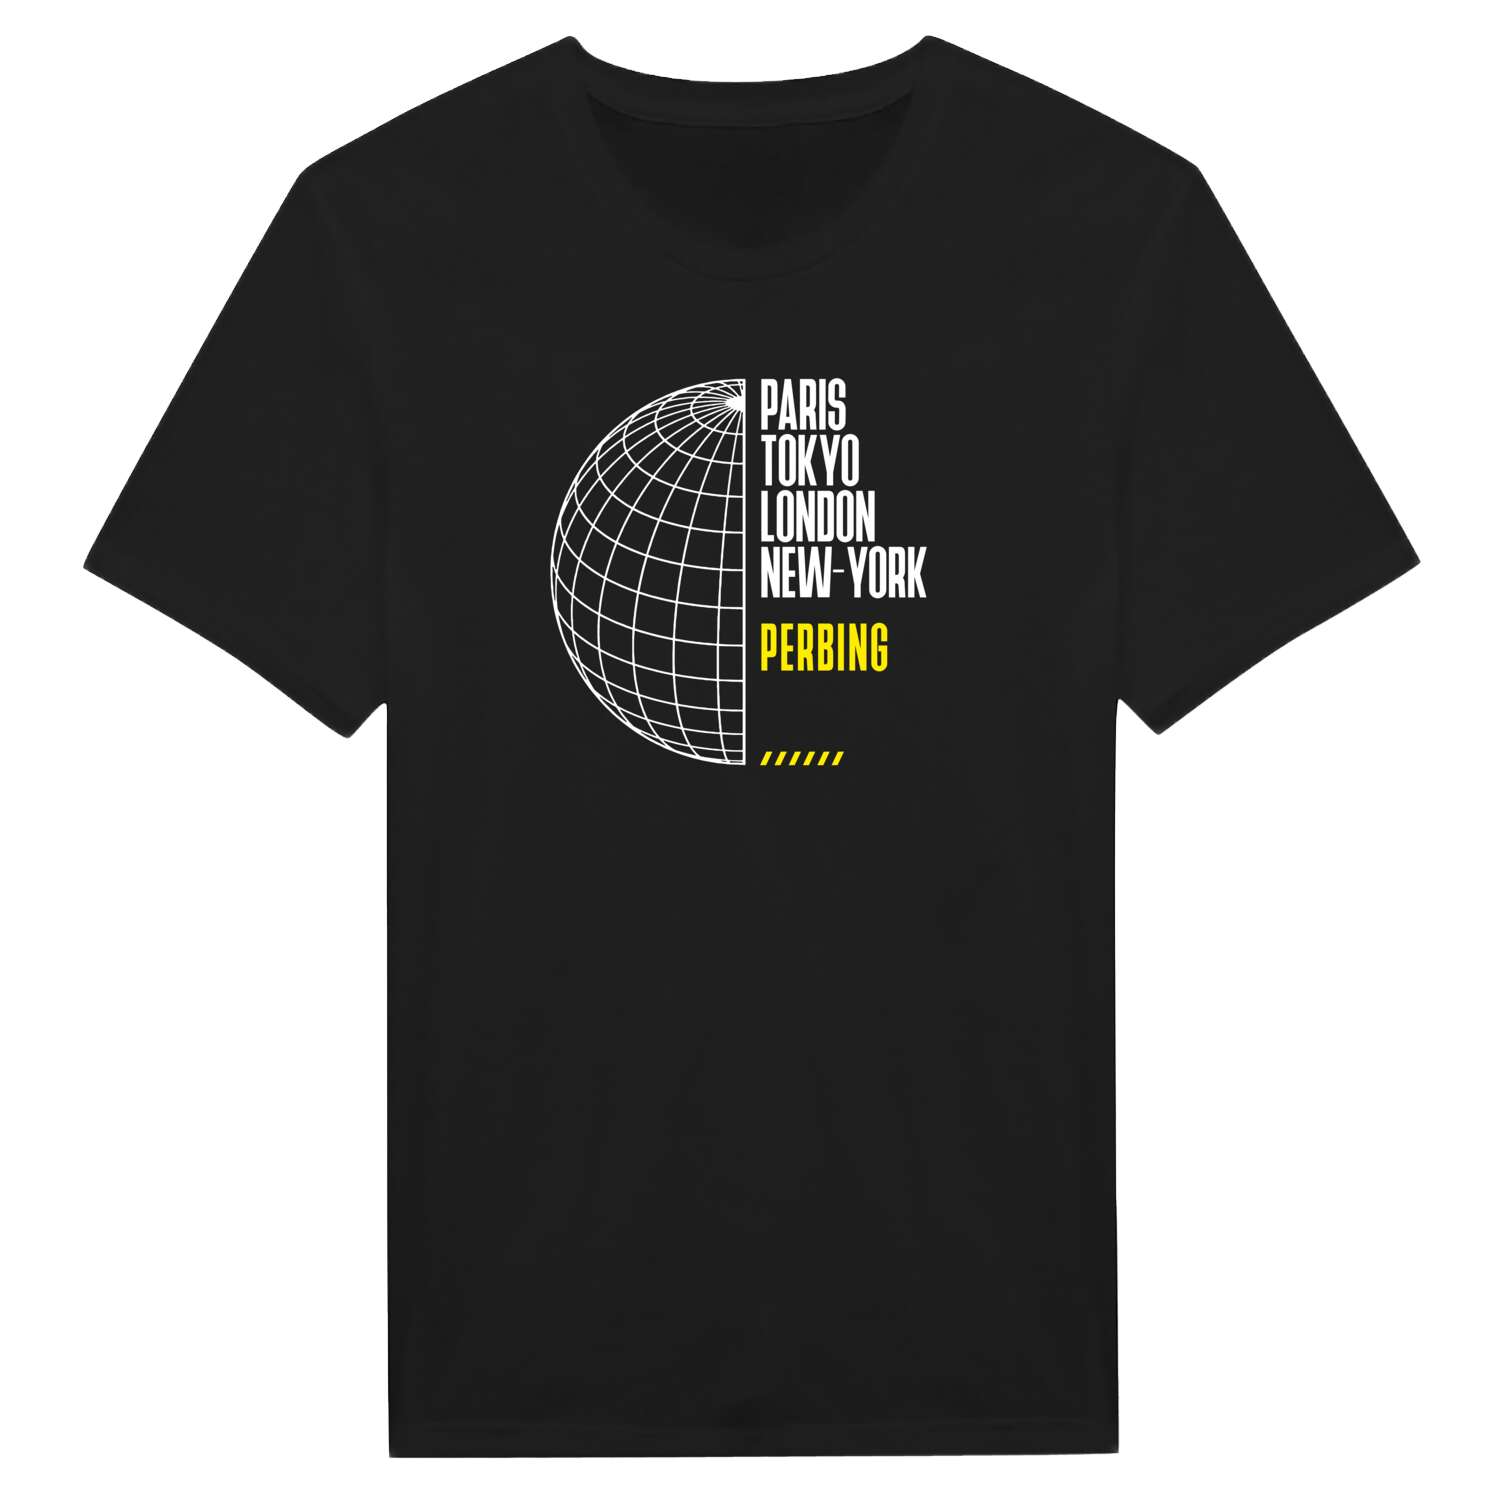 Perbing T-Shirt »Paris Tokyo London«